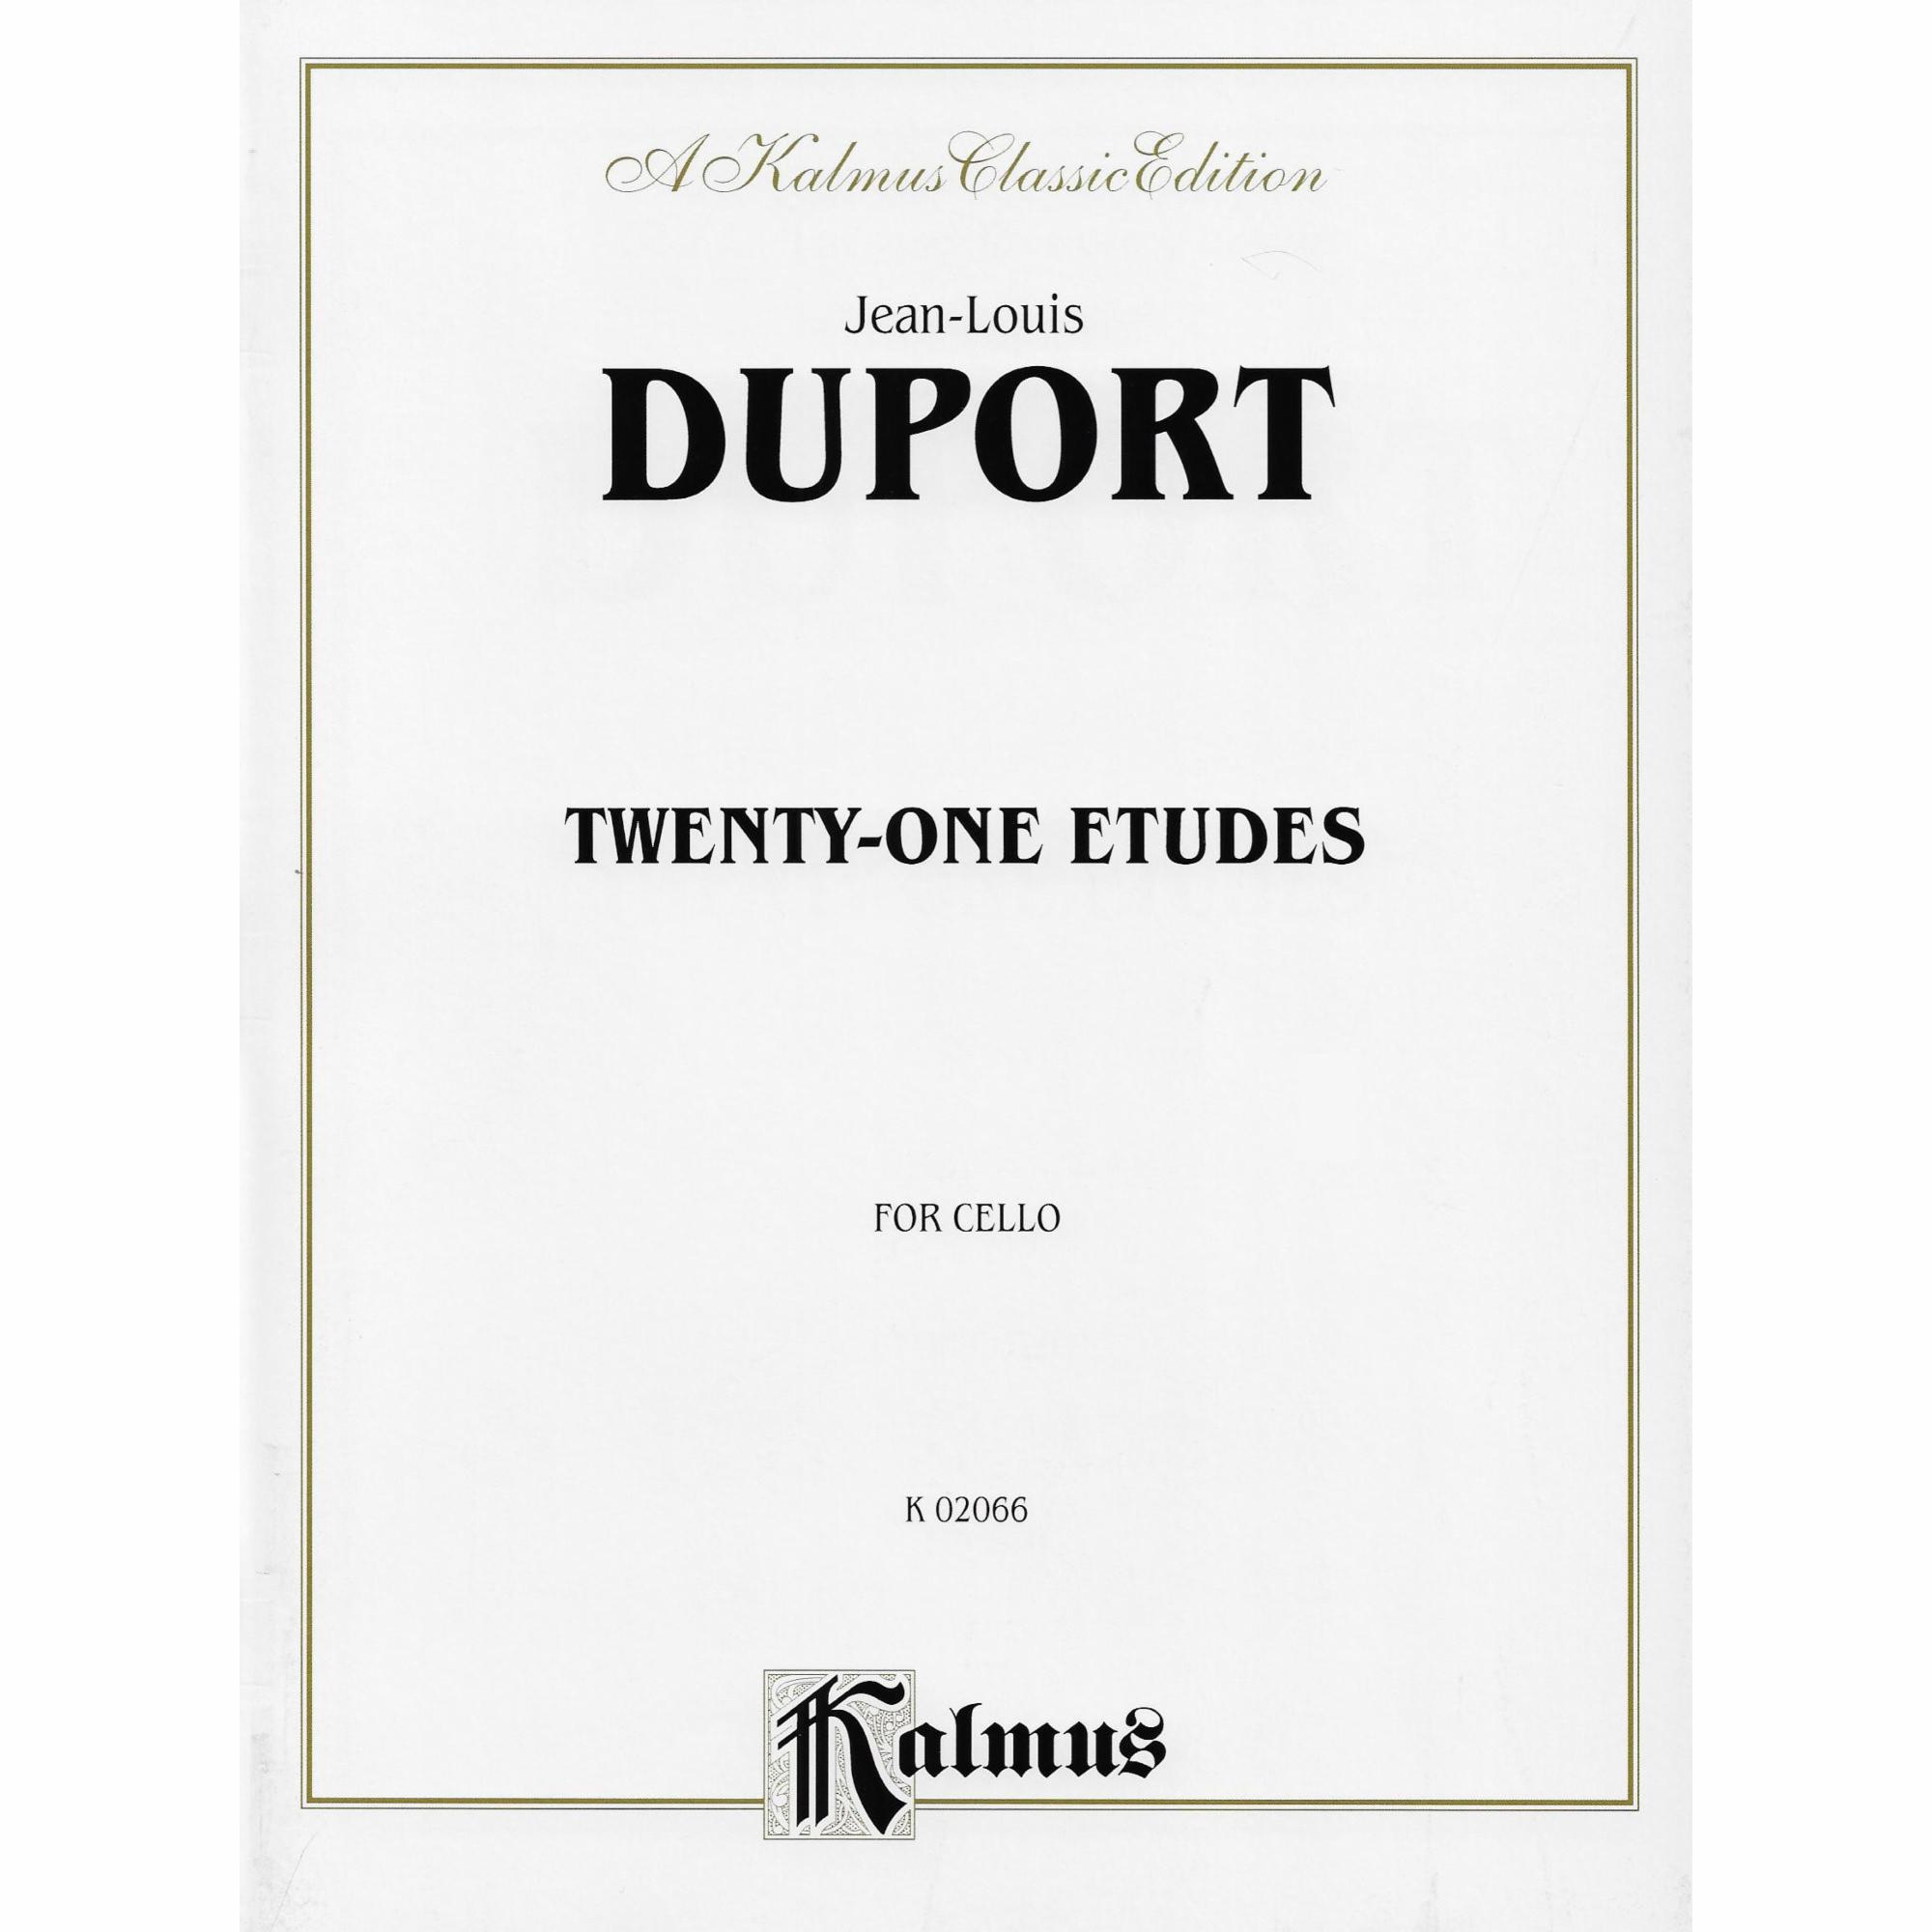 Duport -- Twenty-One Etudes for Cello